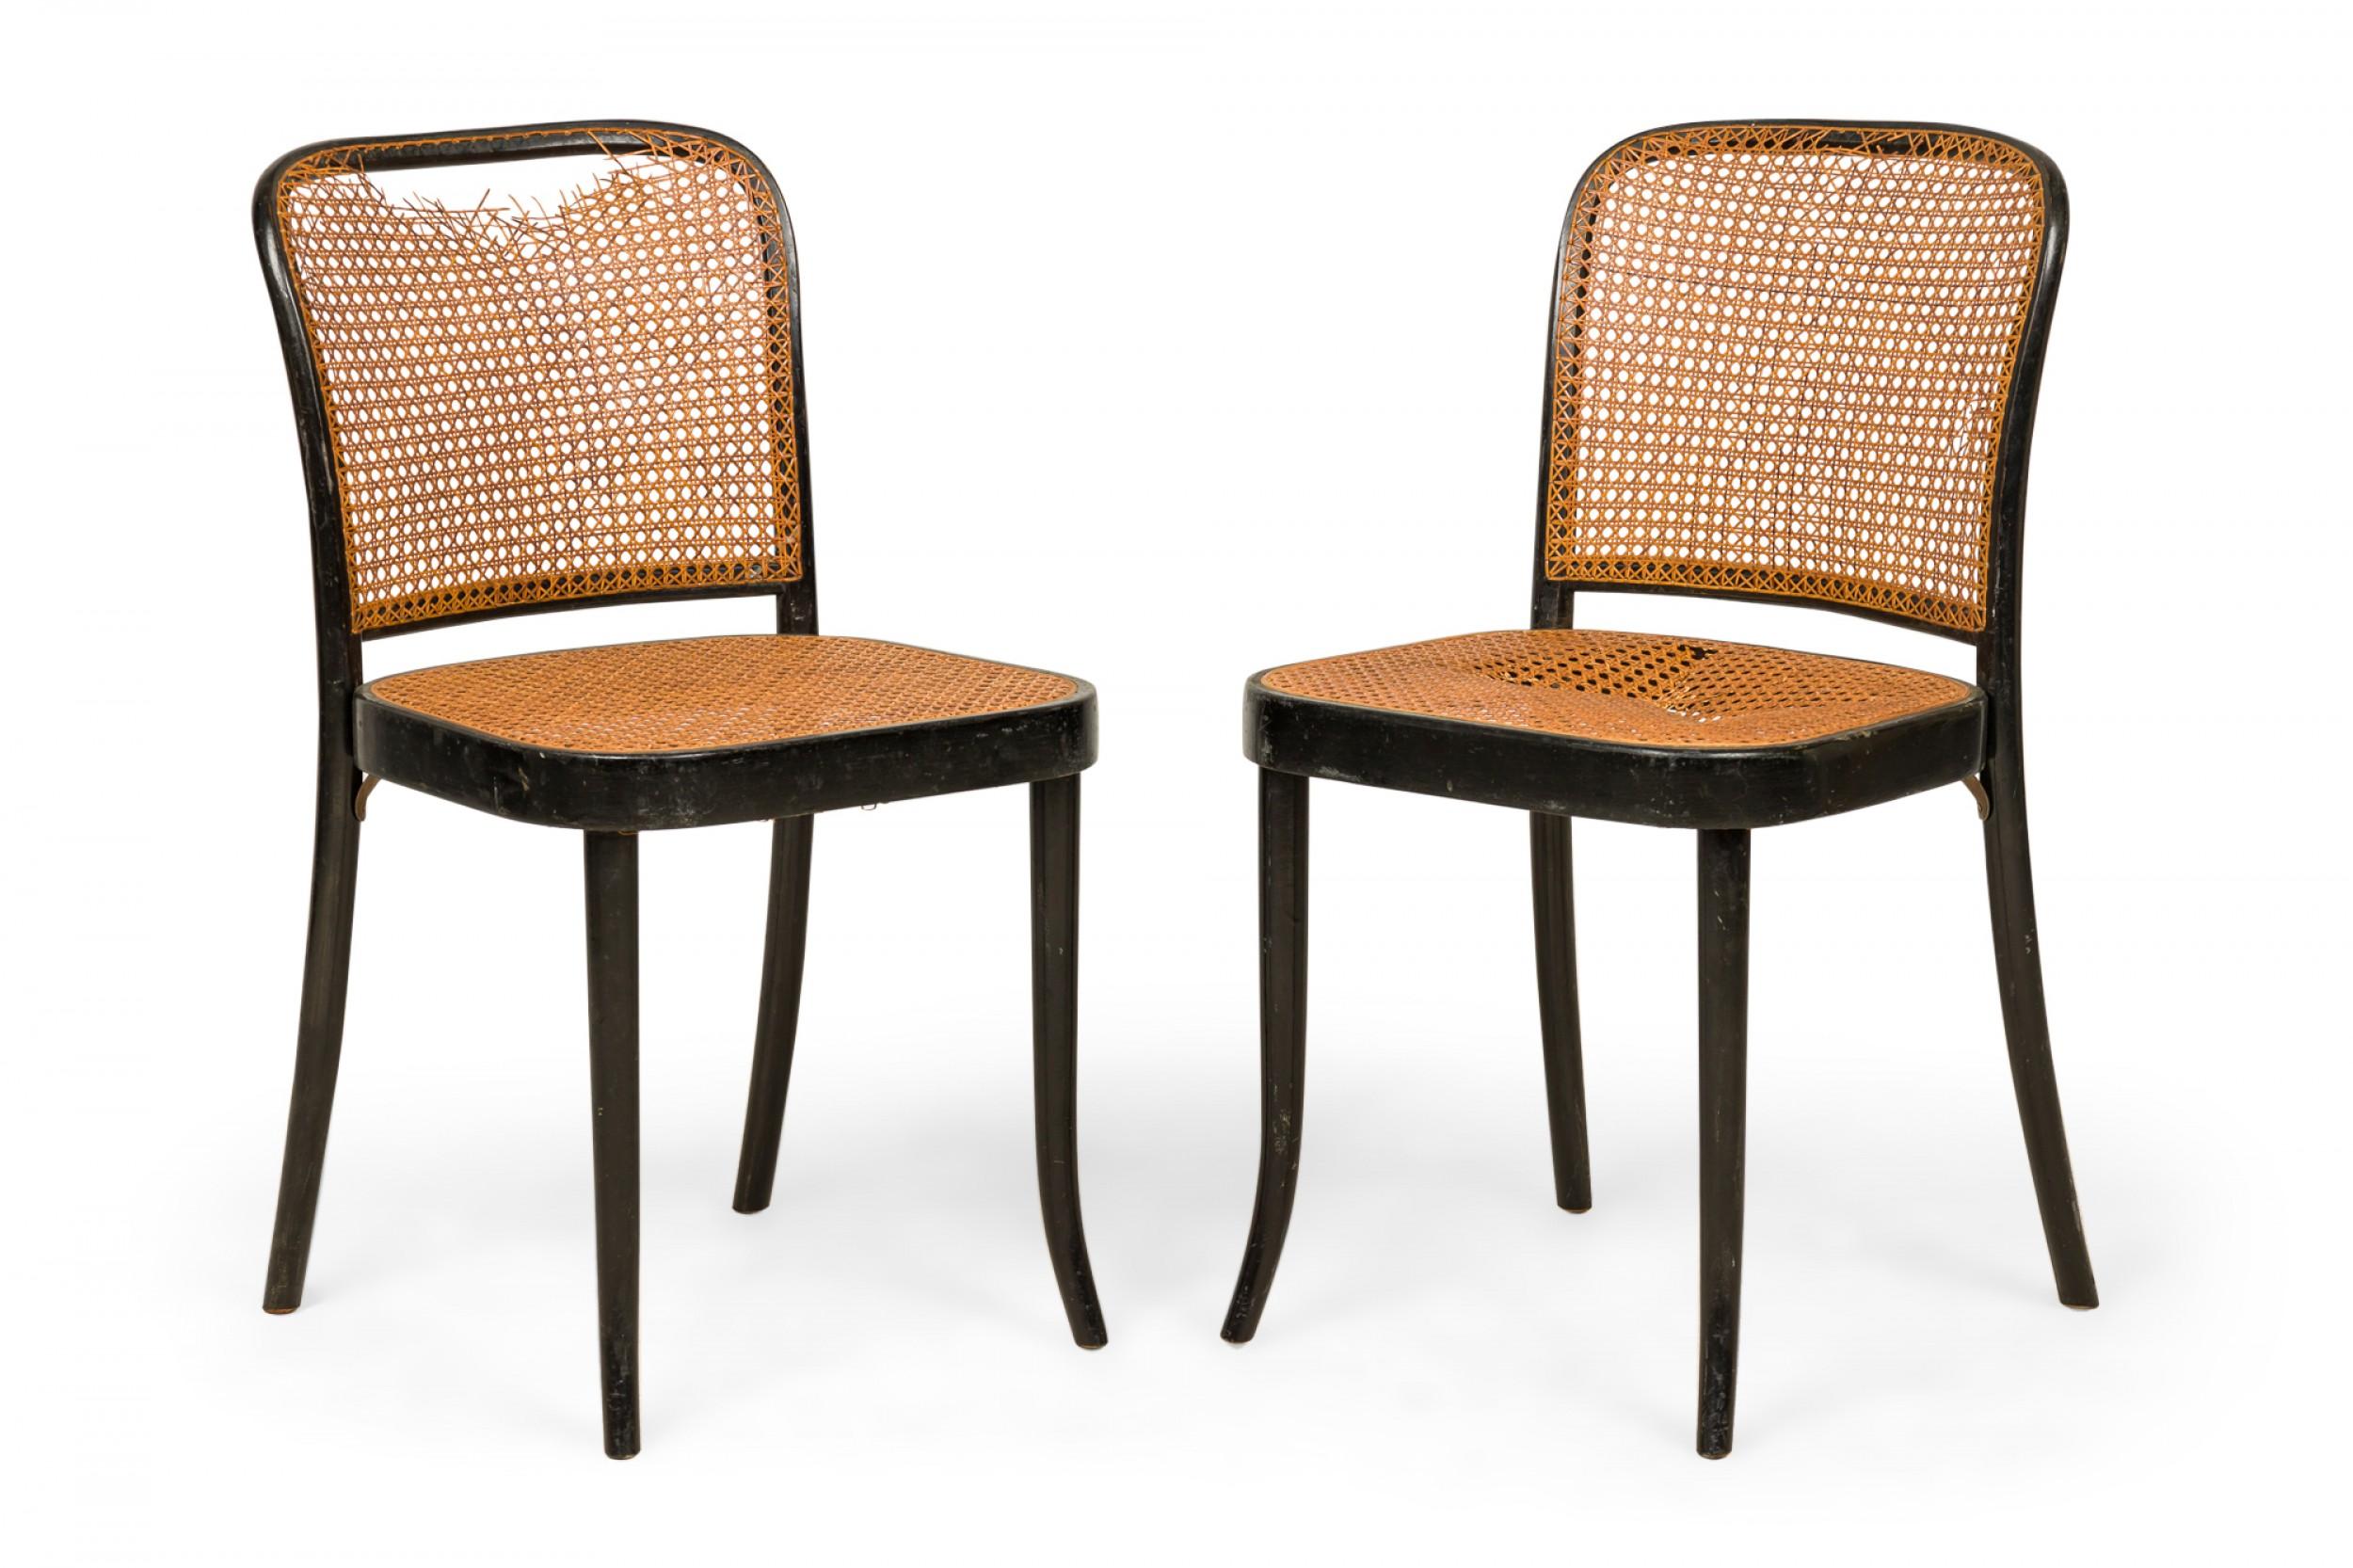 ENSEMBLE de 7 chaises de salle à manger anciennes en bois courbé à la vapeur, avec assise et dossier cannelés, reposant sur quatre pieds légèrement courbés. (THONET)(PRIX DE L'ENSEMBLE).
 